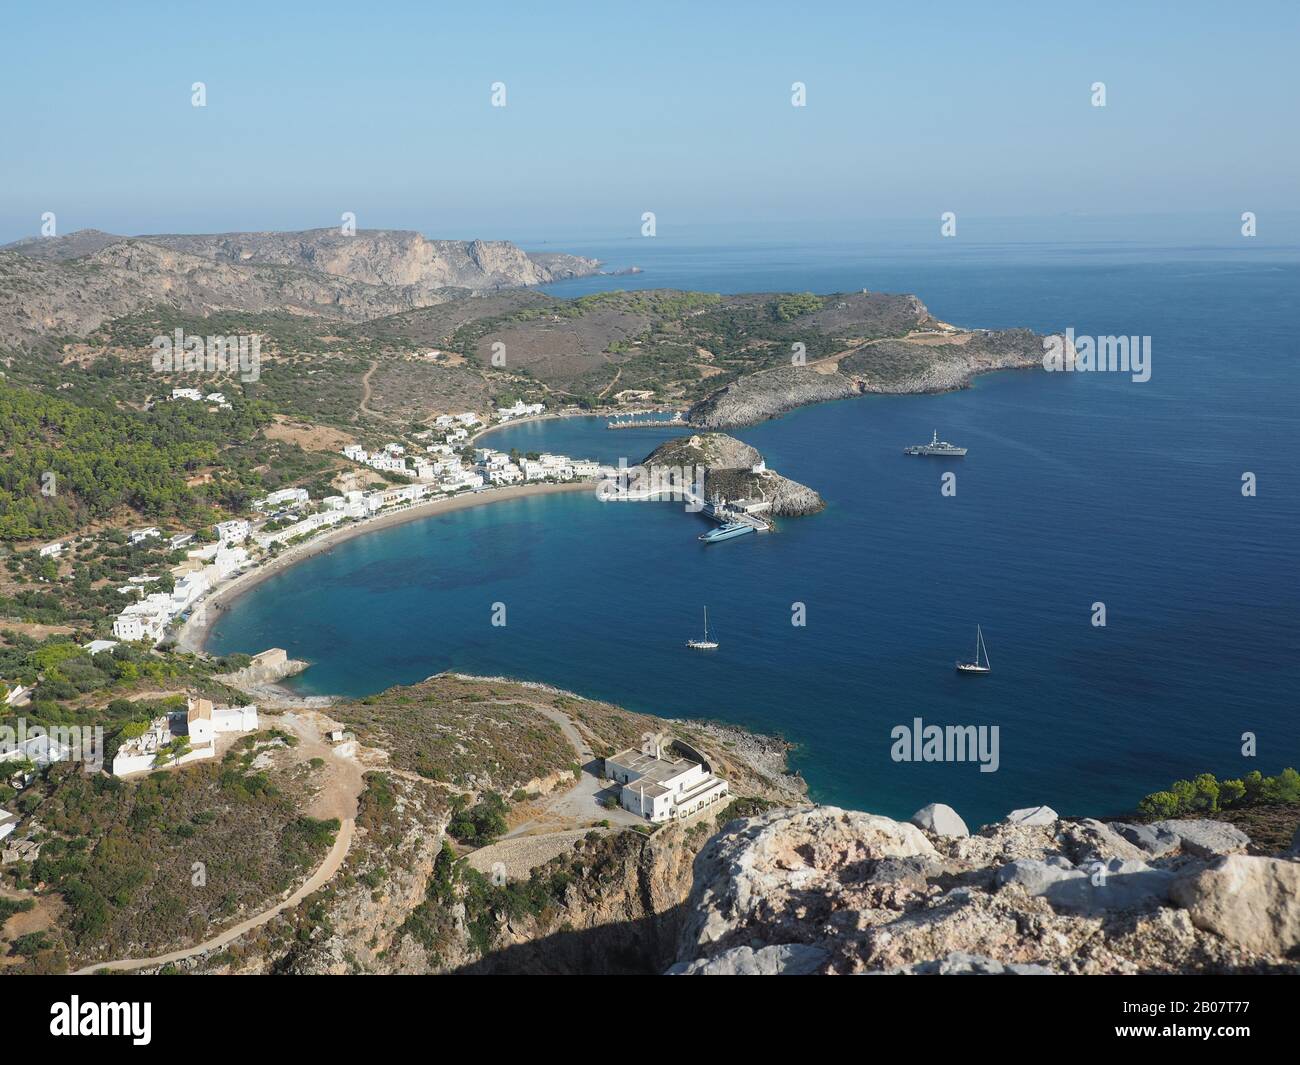 Kapsali spiaggia, baia e porto sull'isola di Citera, Grecia. Mostra il faros / faro e la chiesa di San Giorgio / Agios Georgios. Foto Stock